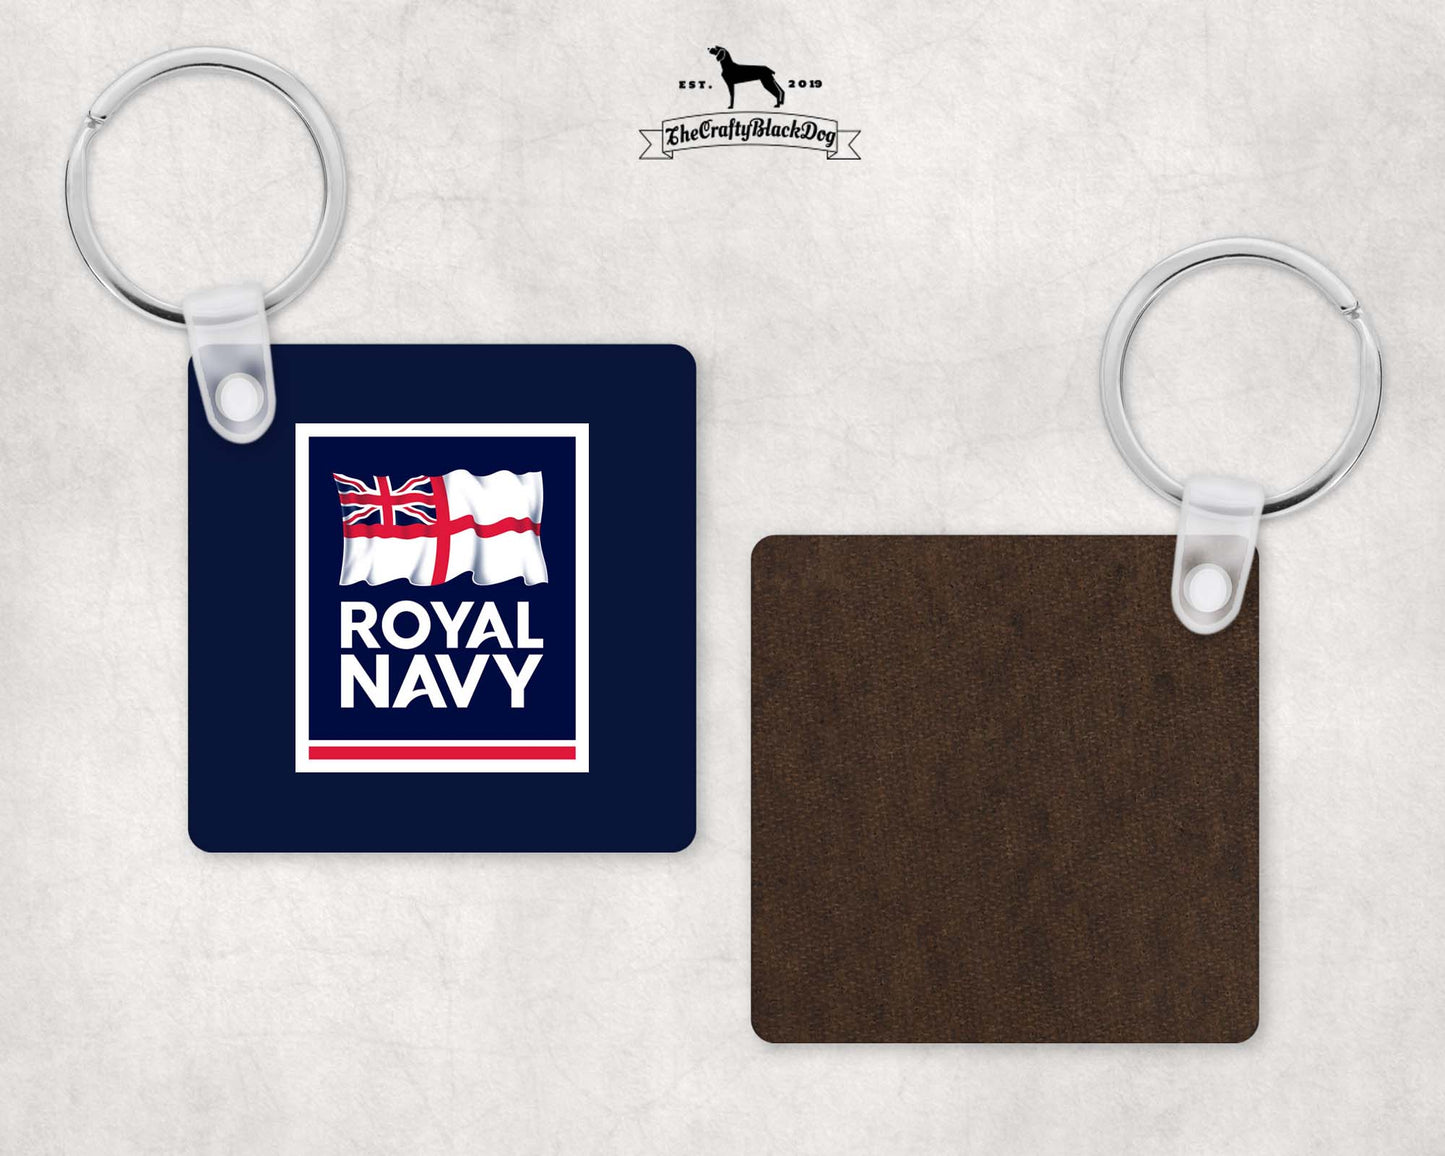 Royal Navy - Square Key Ring